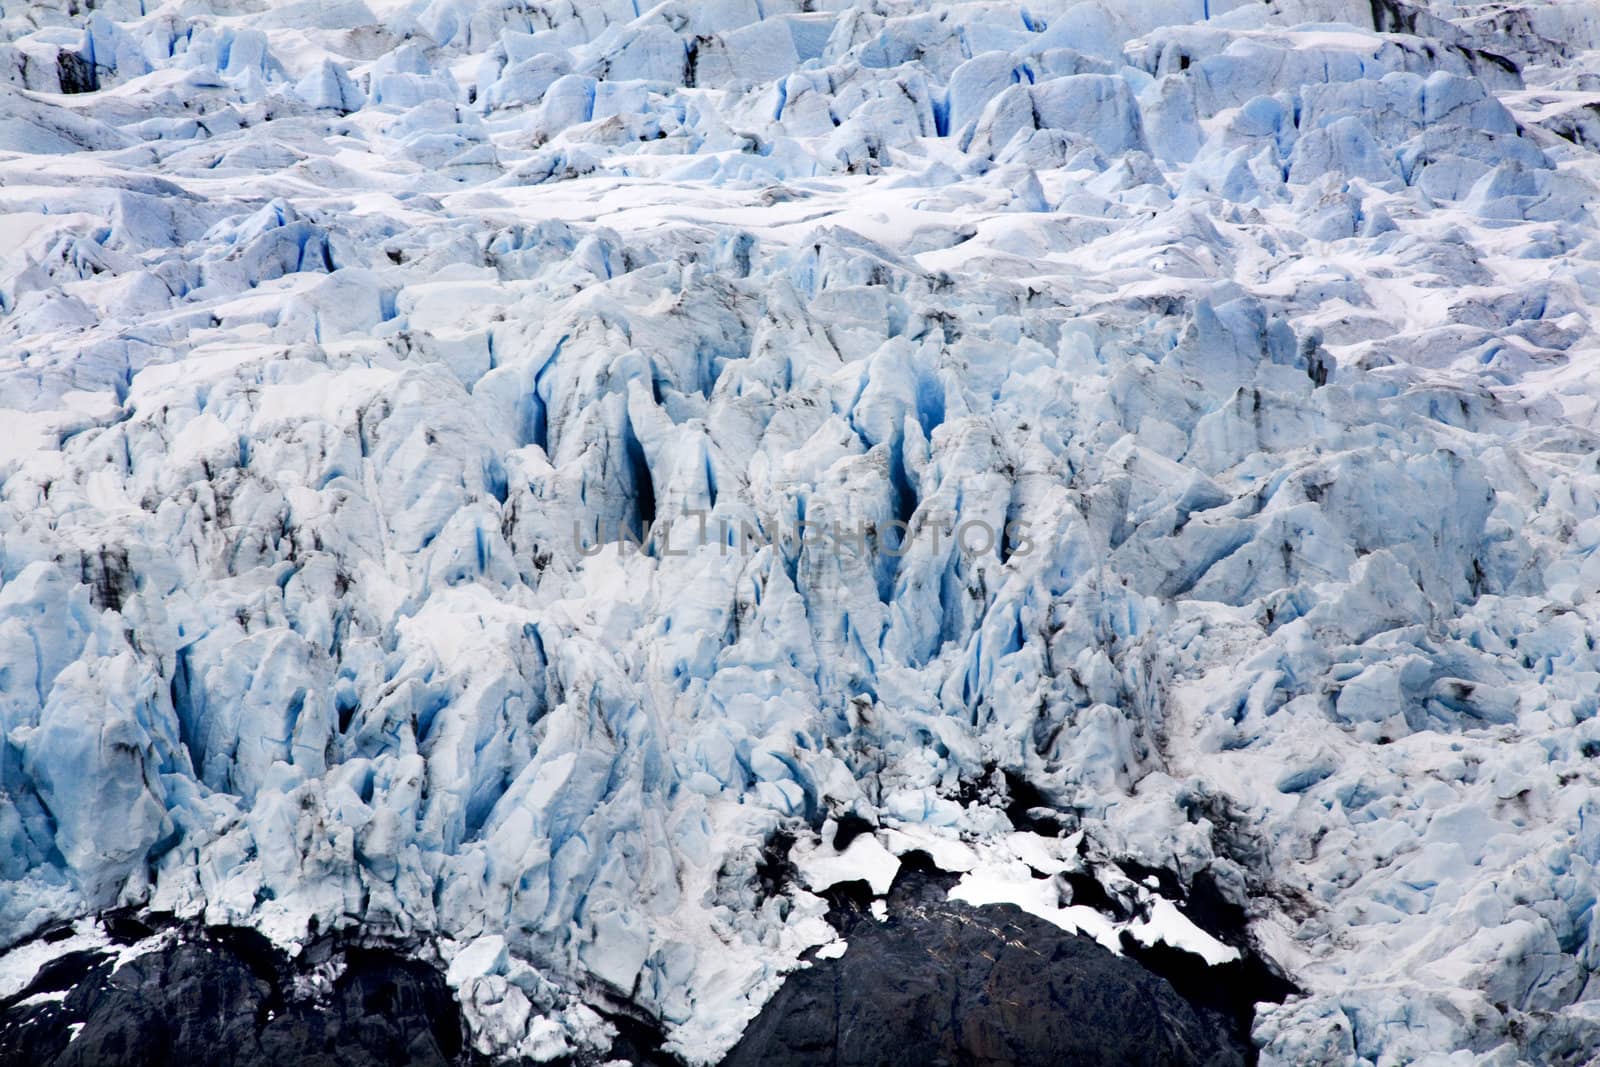 Blue Icy Portage Glacier with Black Rock Anchorage, Alaska

